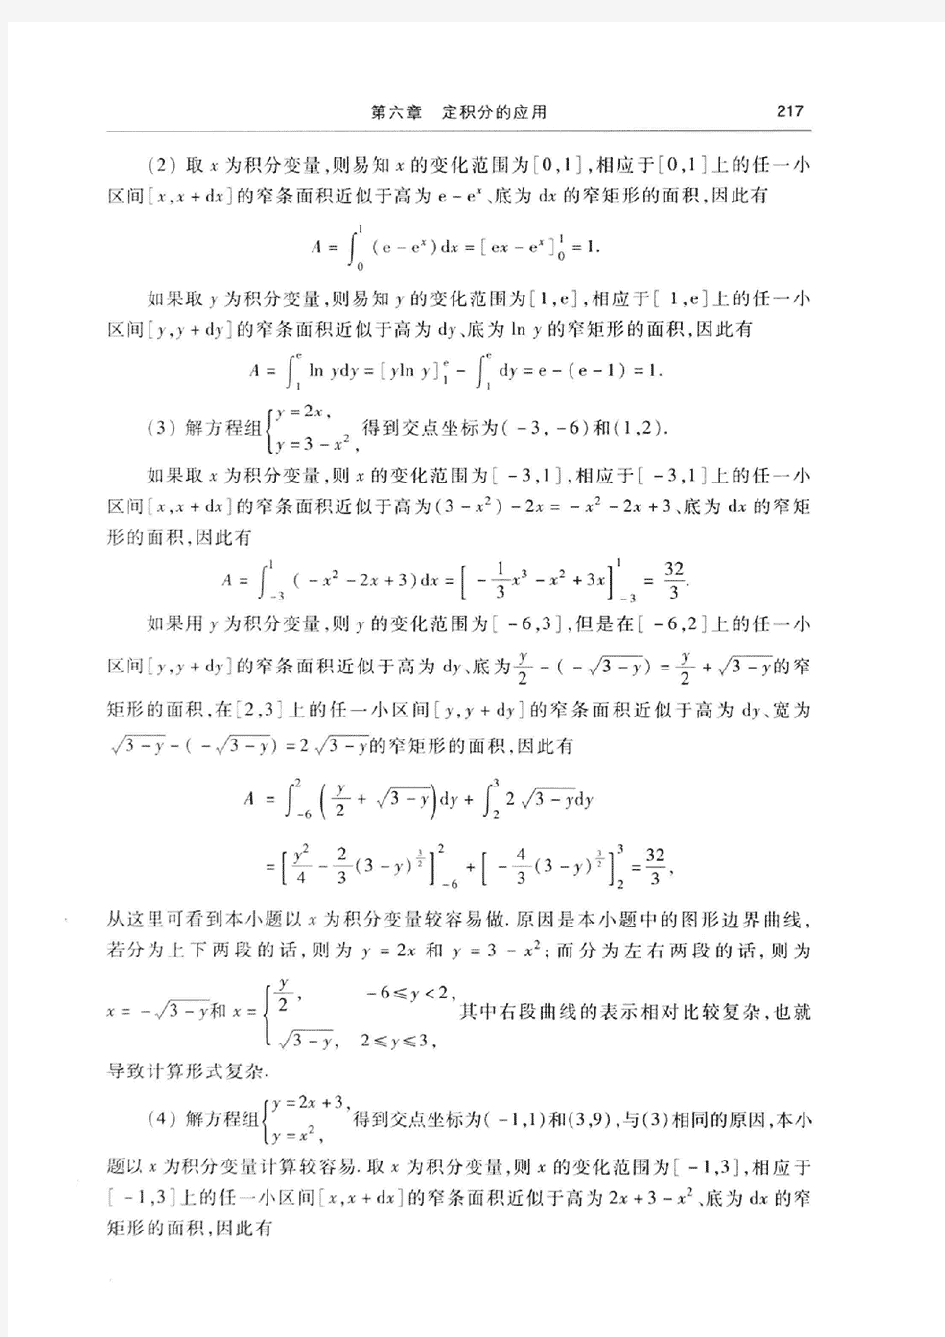 高等数学(同济大学数学系-第七版)上册第六章课后答案[001]